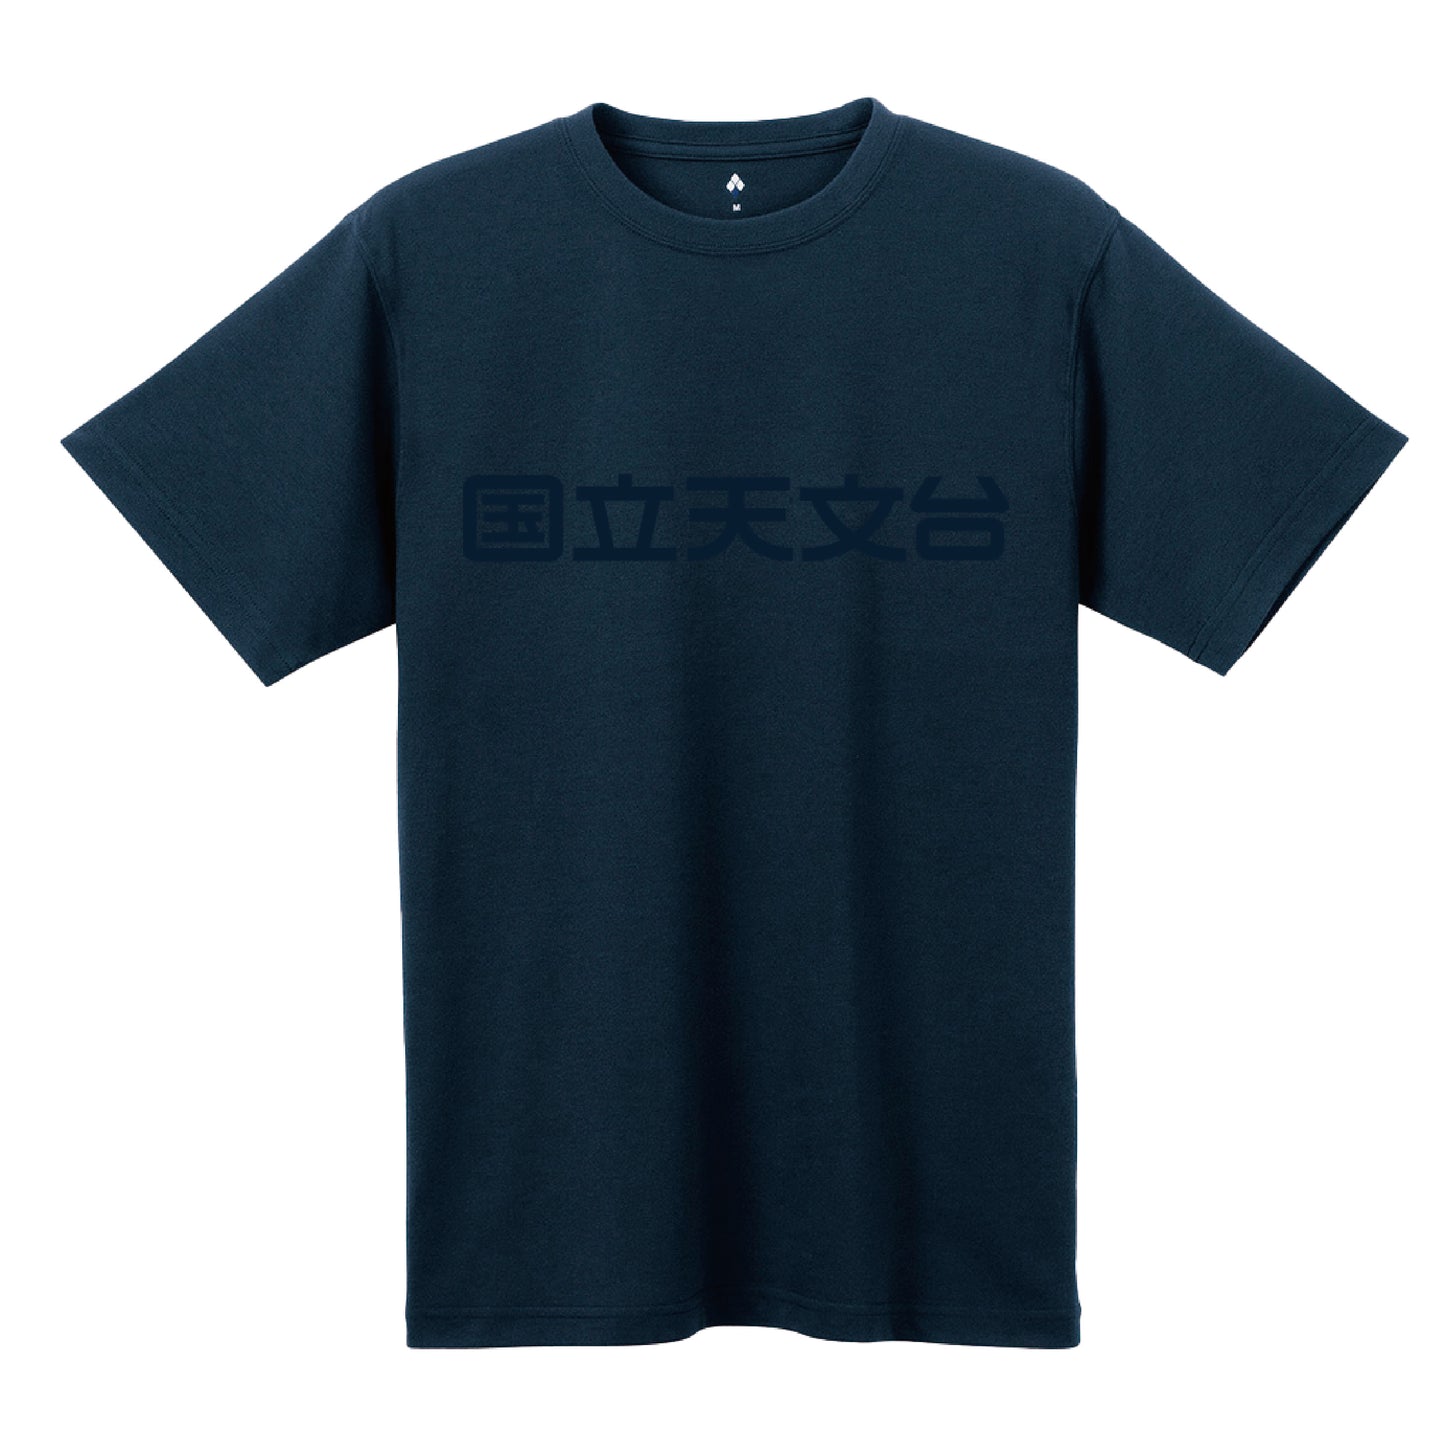 国立天文台 NAOJ漢字 ロゴマーク WIC. Tシャツ ネイビー x ネイビー M 00